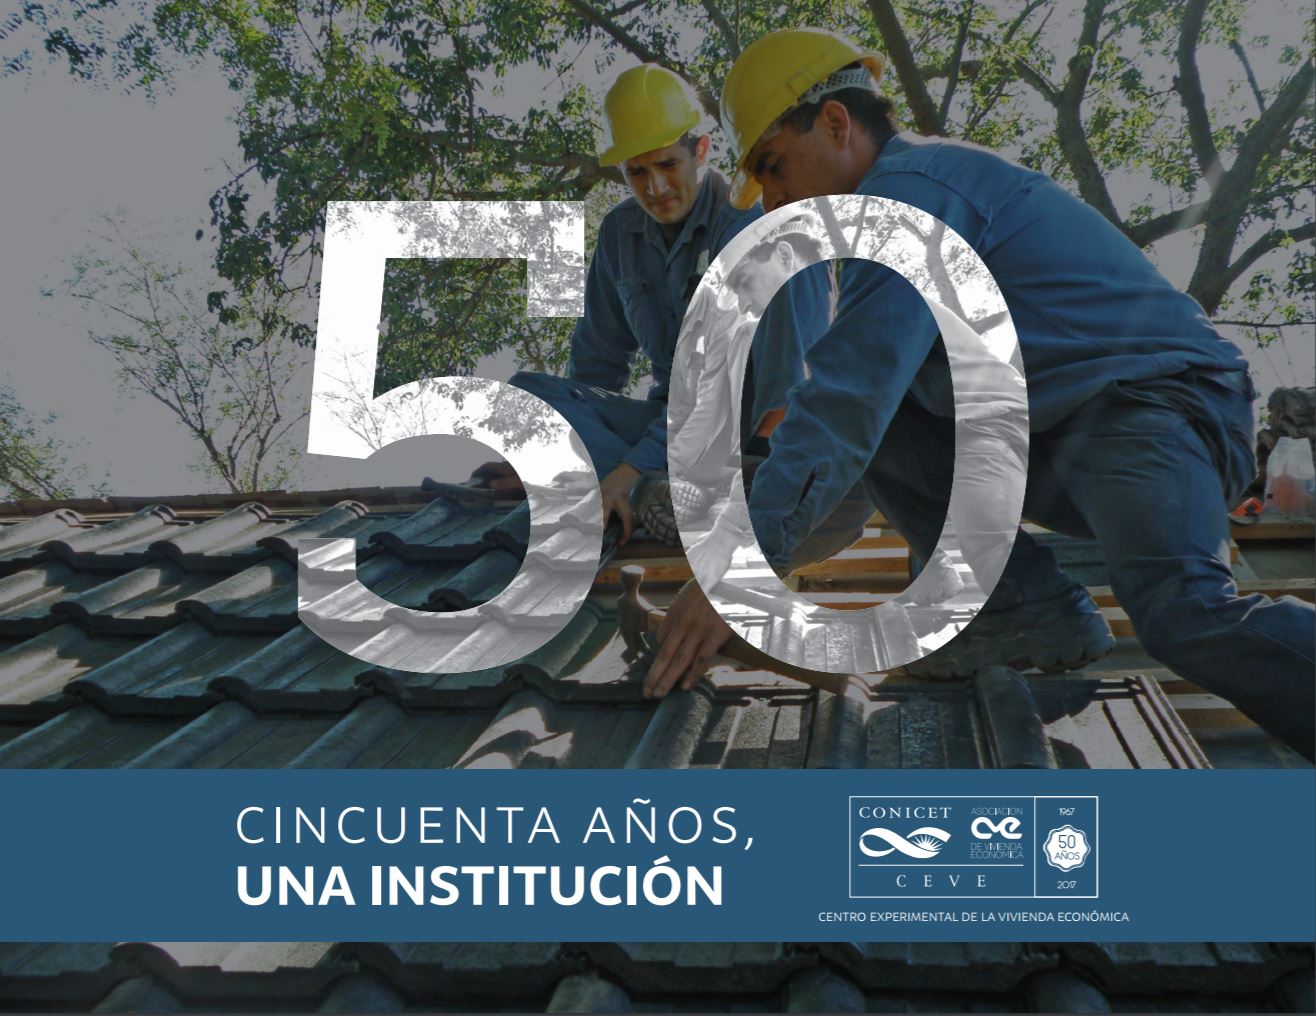 ¡Felicidades al Centro Experimental de la Vivienda Económica por su 50 aniversario!